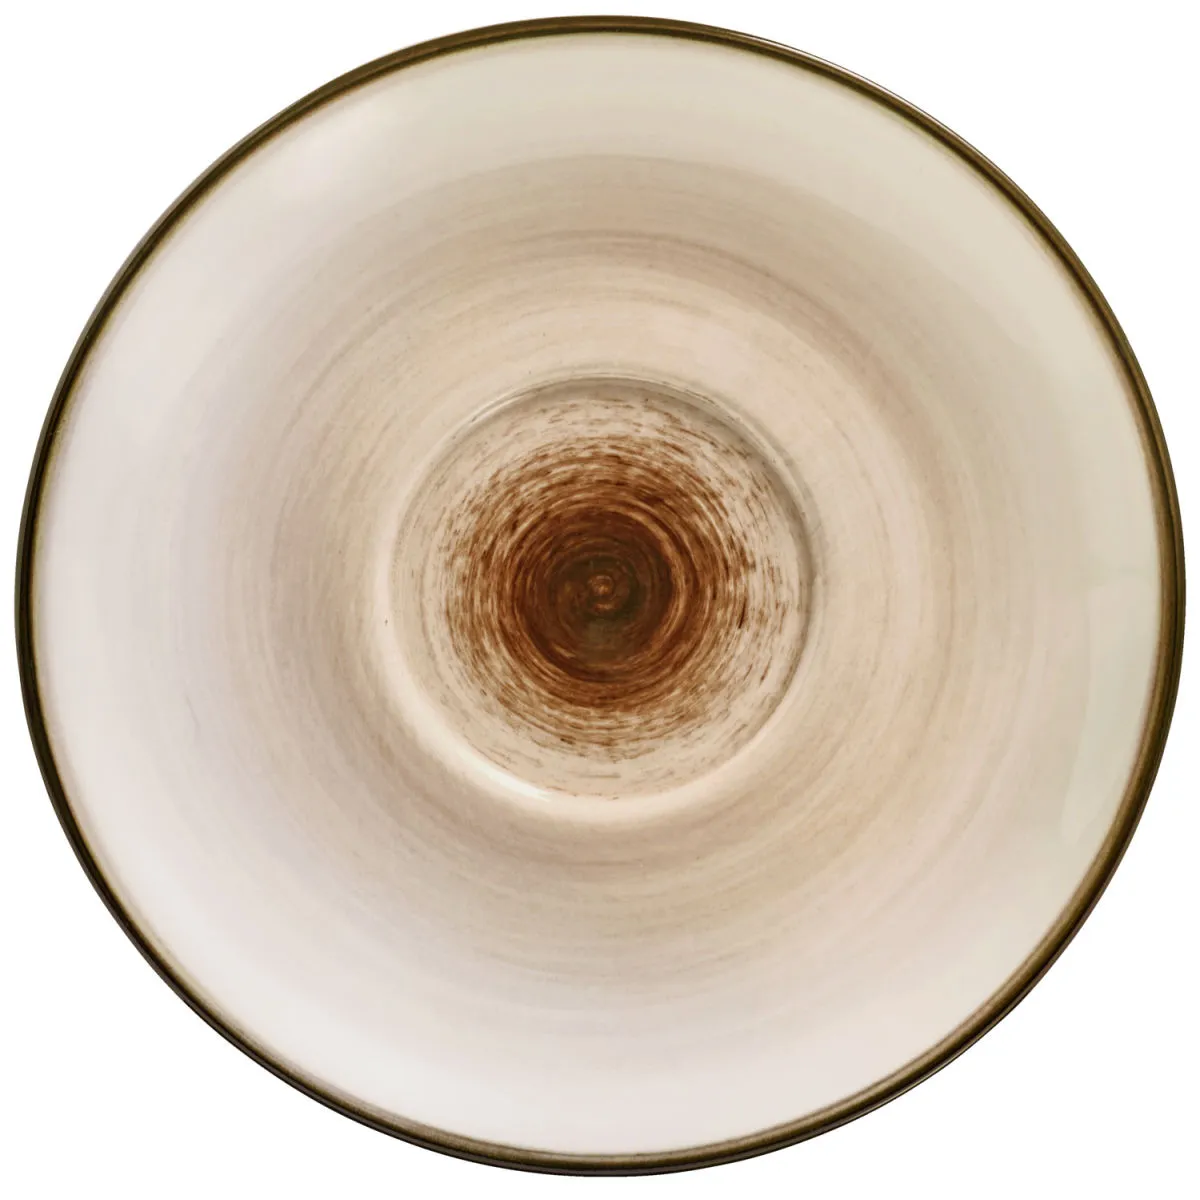 Piattino espresso Limaro VEGA; 11.5 cm (Ø); marrone; rotonda; 6 pz. / confezione